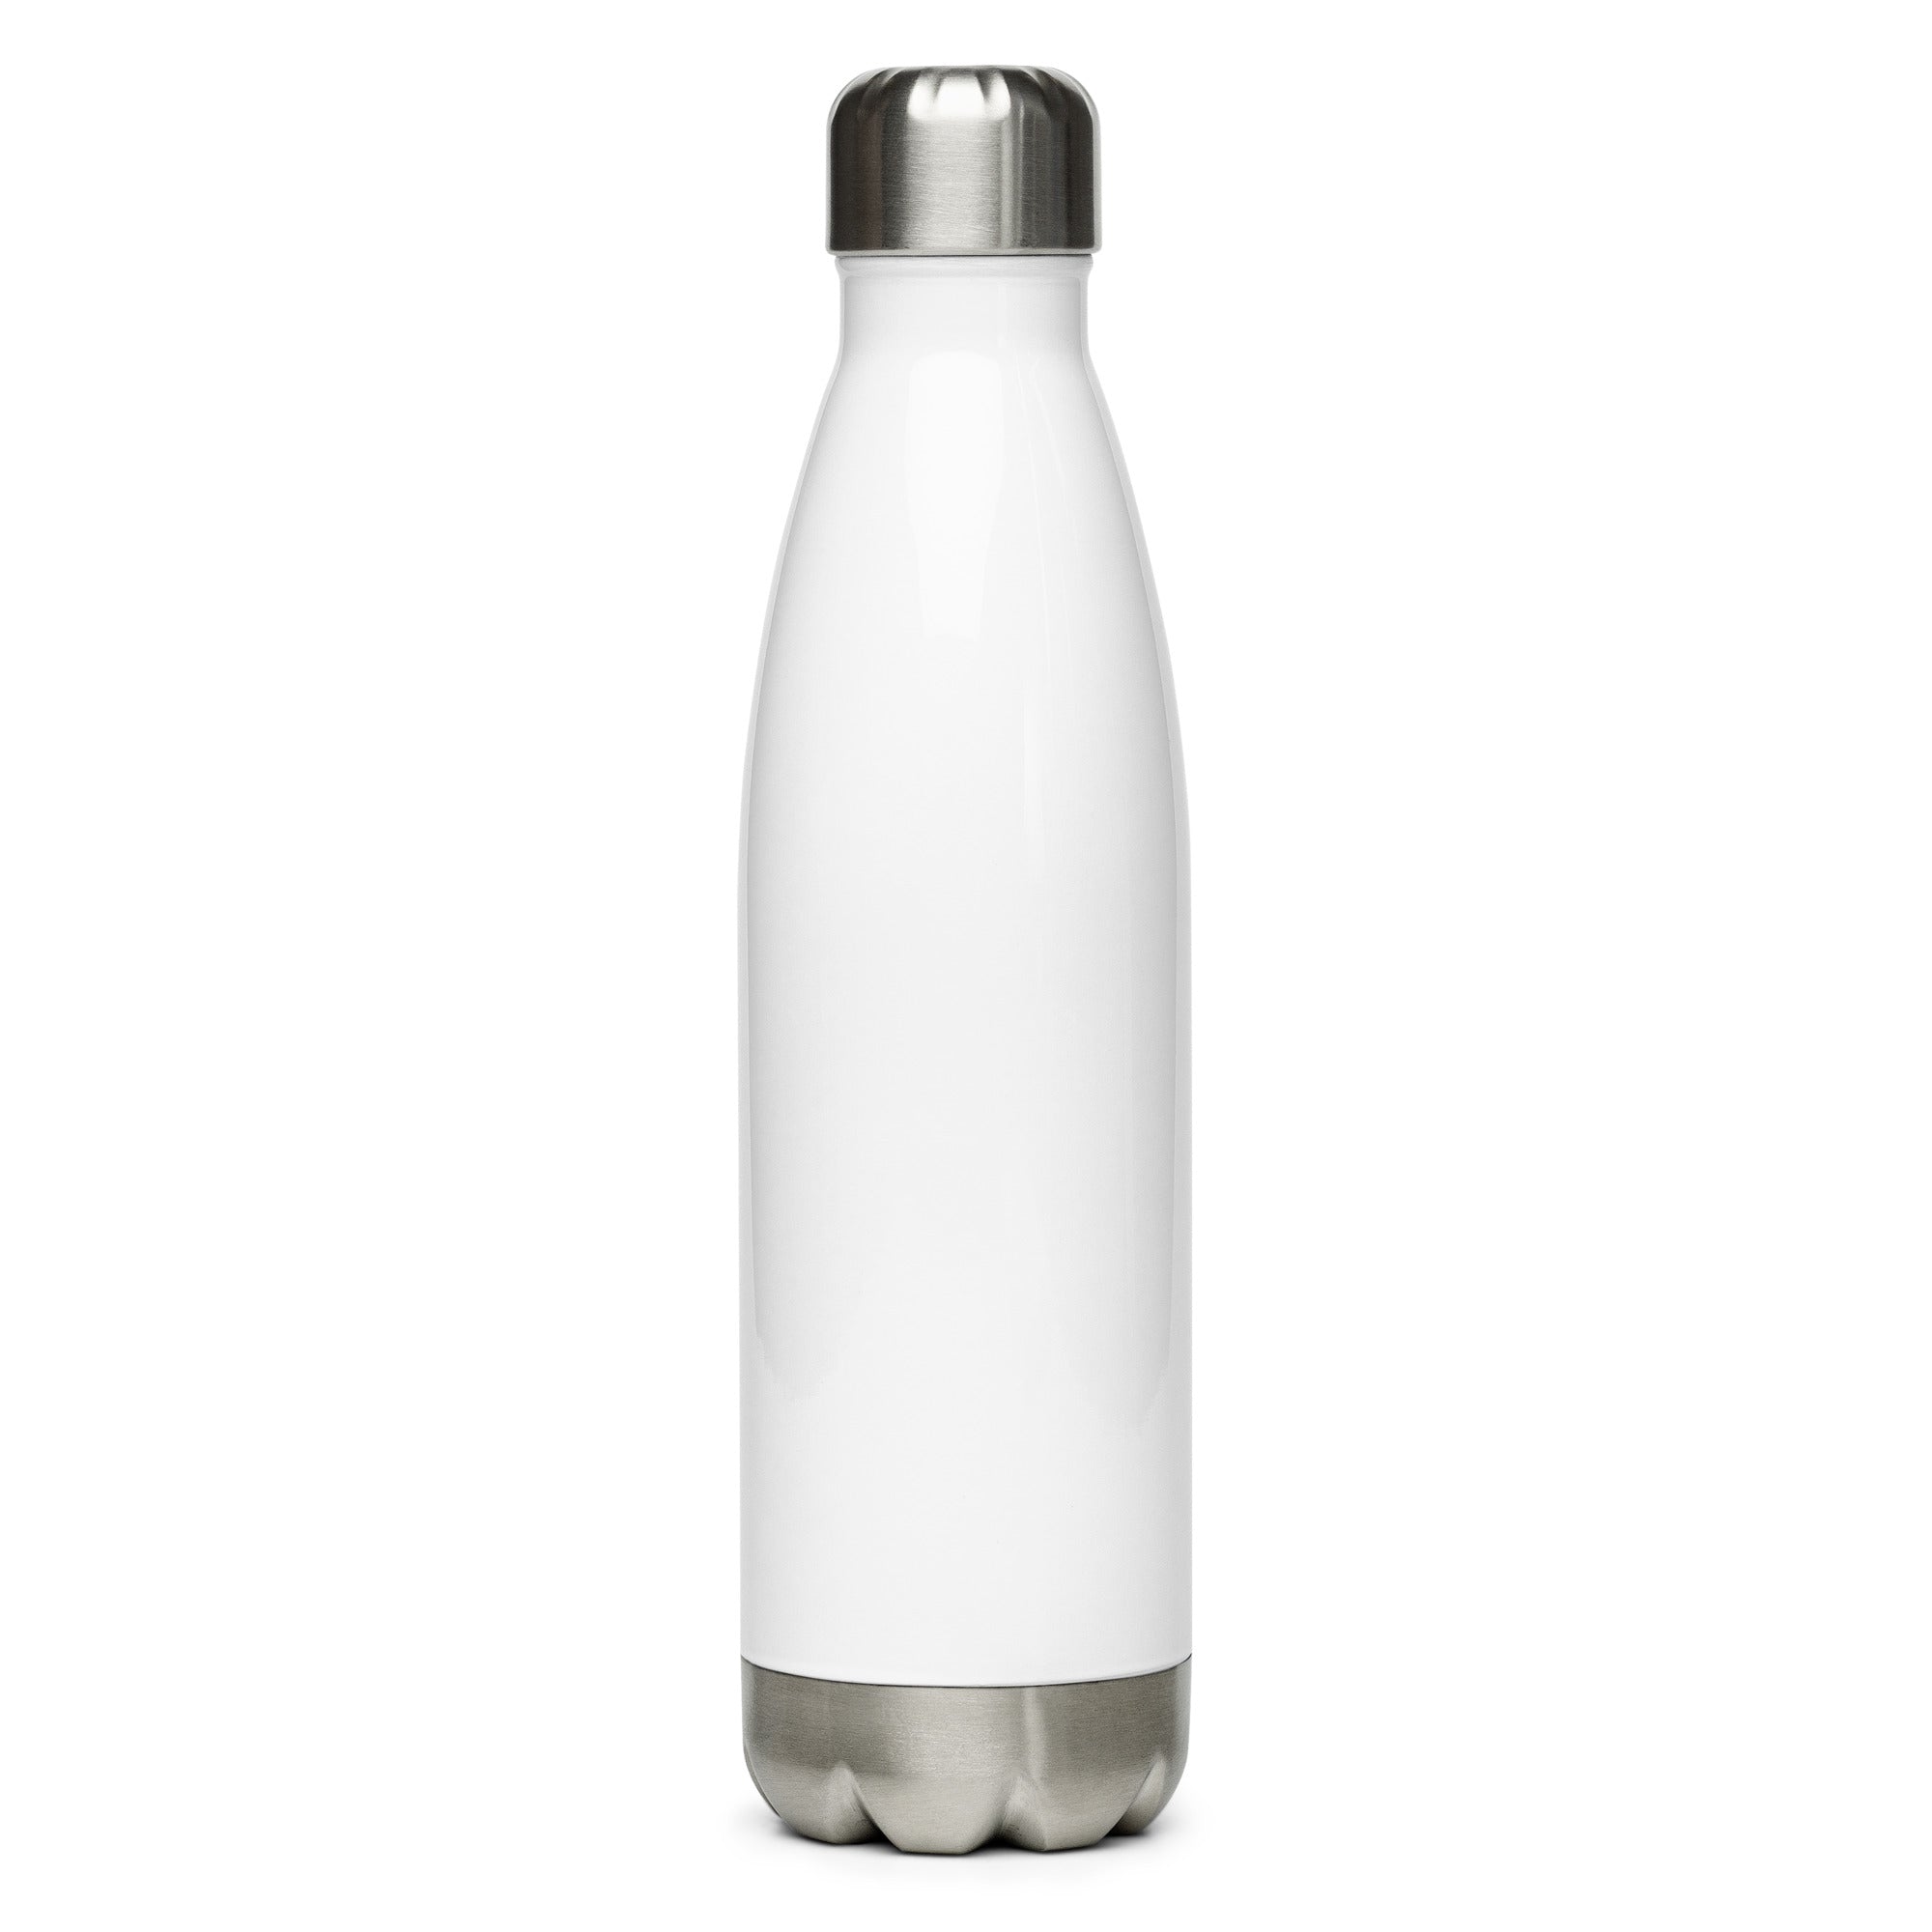 TDCD Stainless Steel Water Bottle